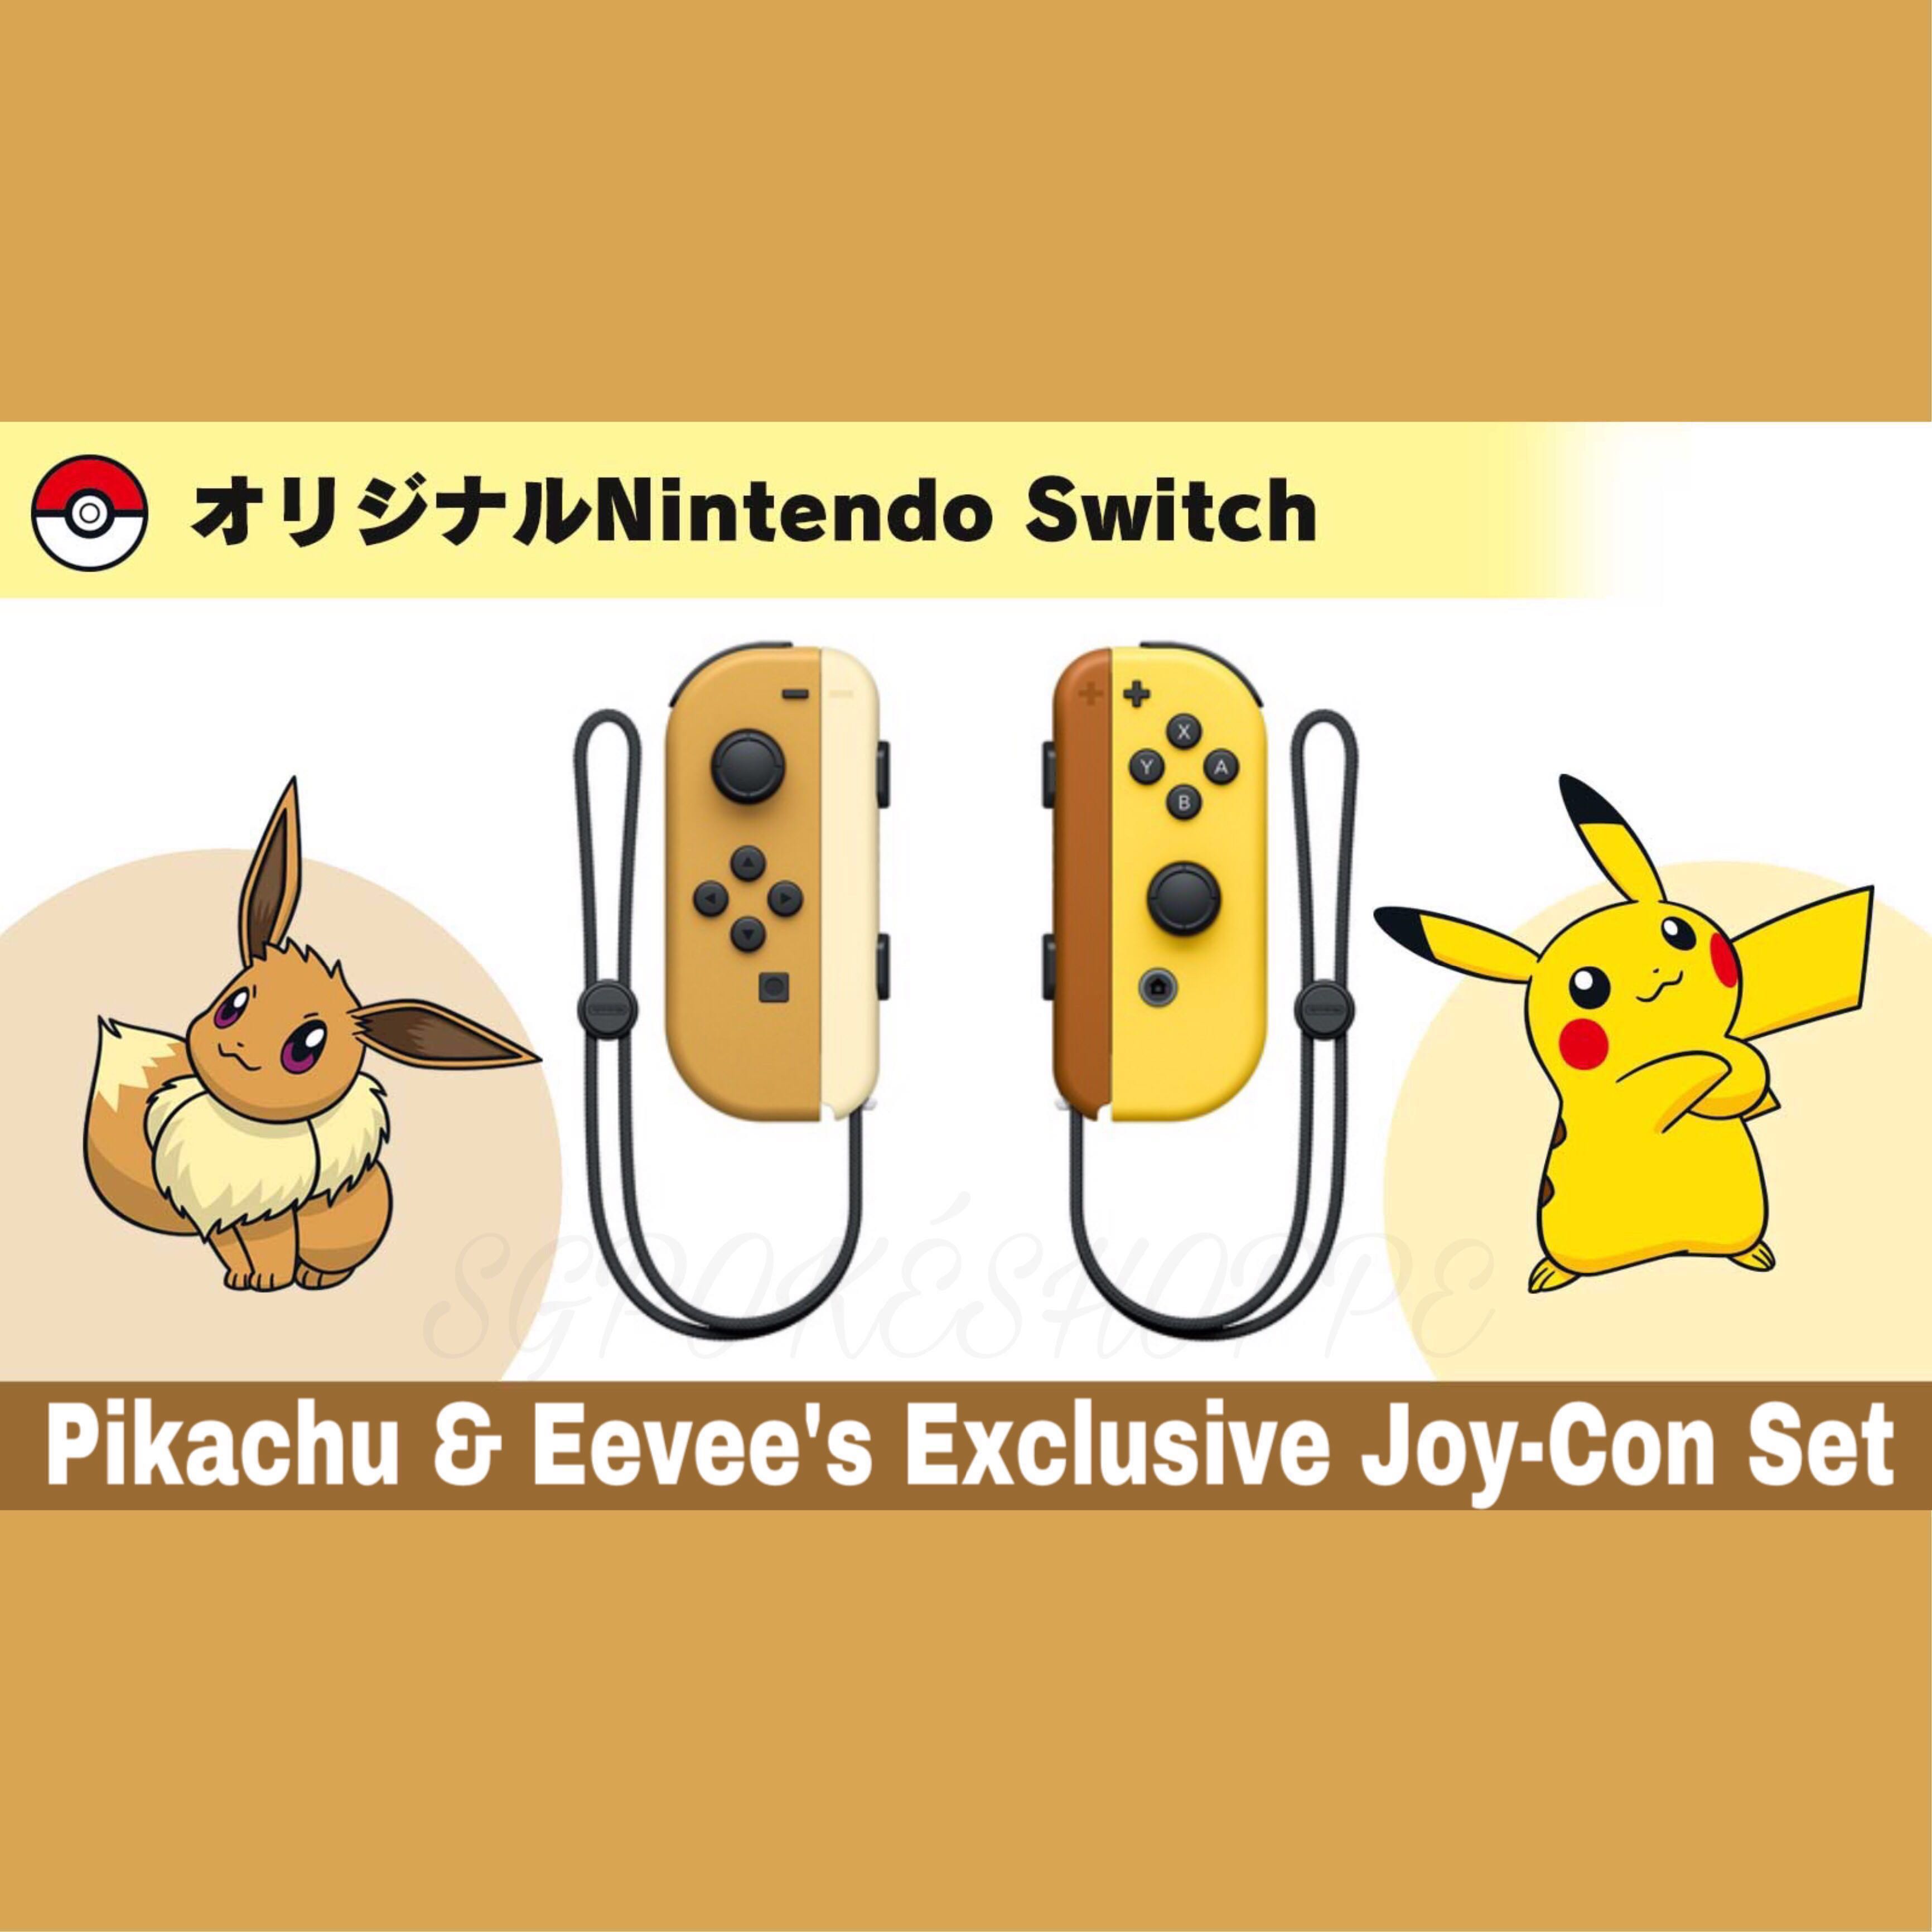 pikachu and eevee joy con